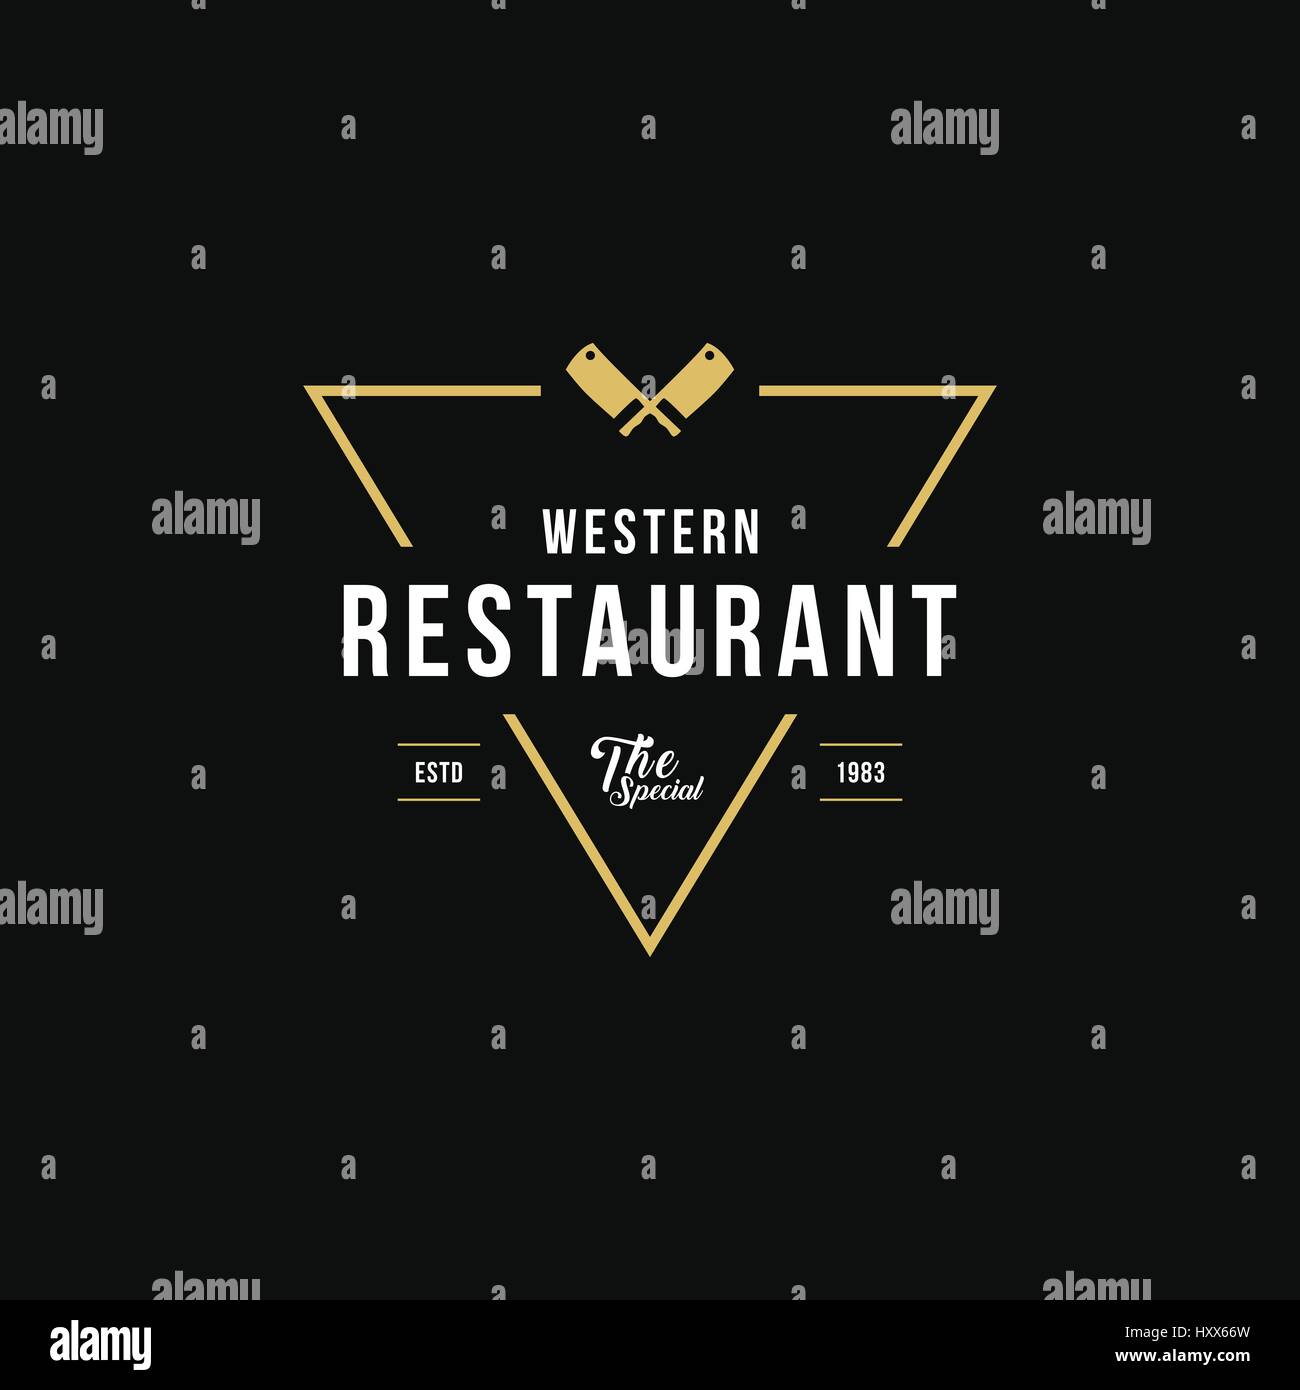 Vintage Restaurant and Cafe label design illustration Stock Vector